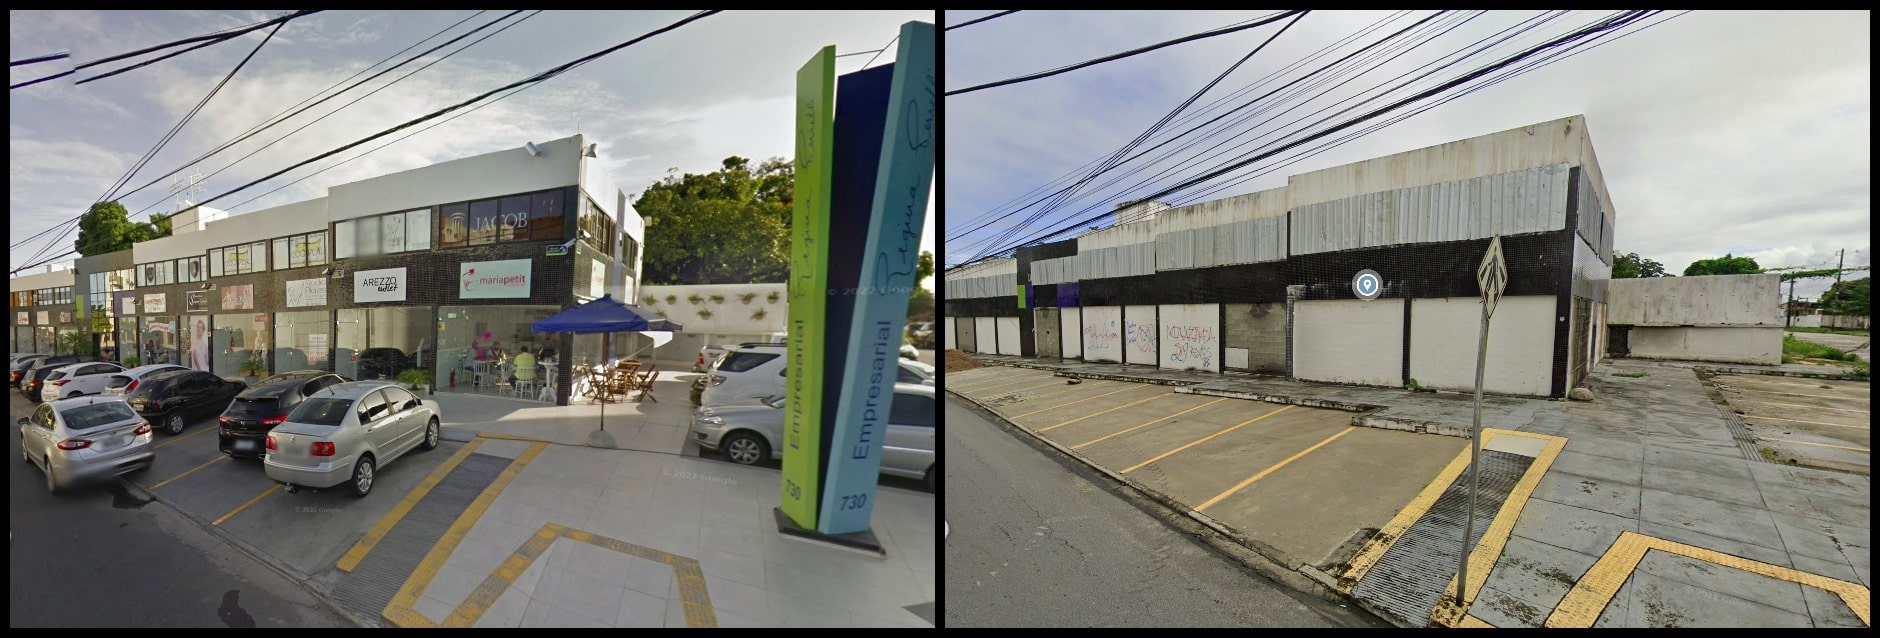 Galeria comercial no Pinheiro antes e depois dos danos causados pela Braskem